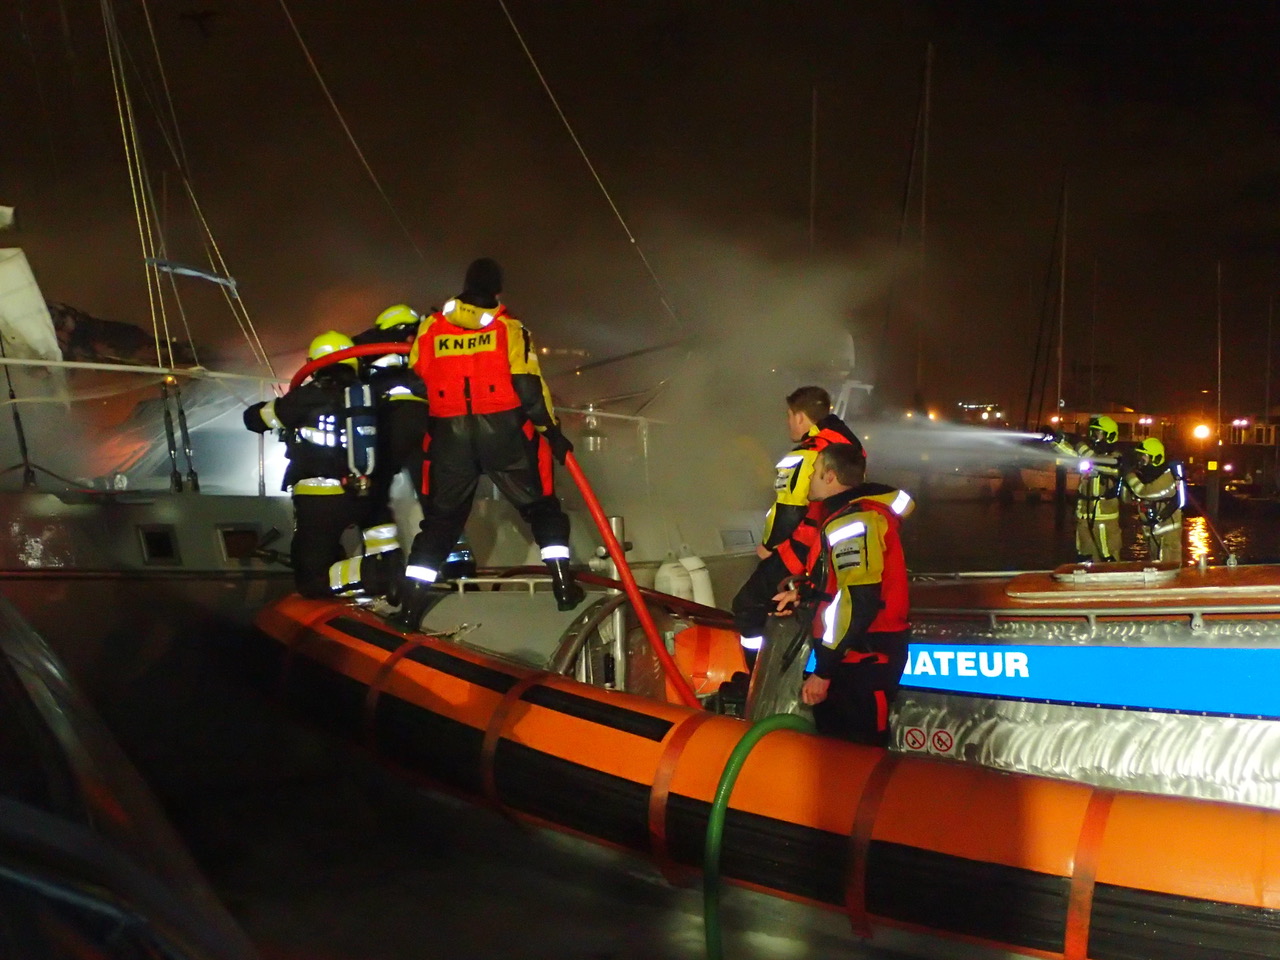 2 KNRM IJmuiden Wijk aan Zee hulpverlening brand aan boord samenwerking brandweer